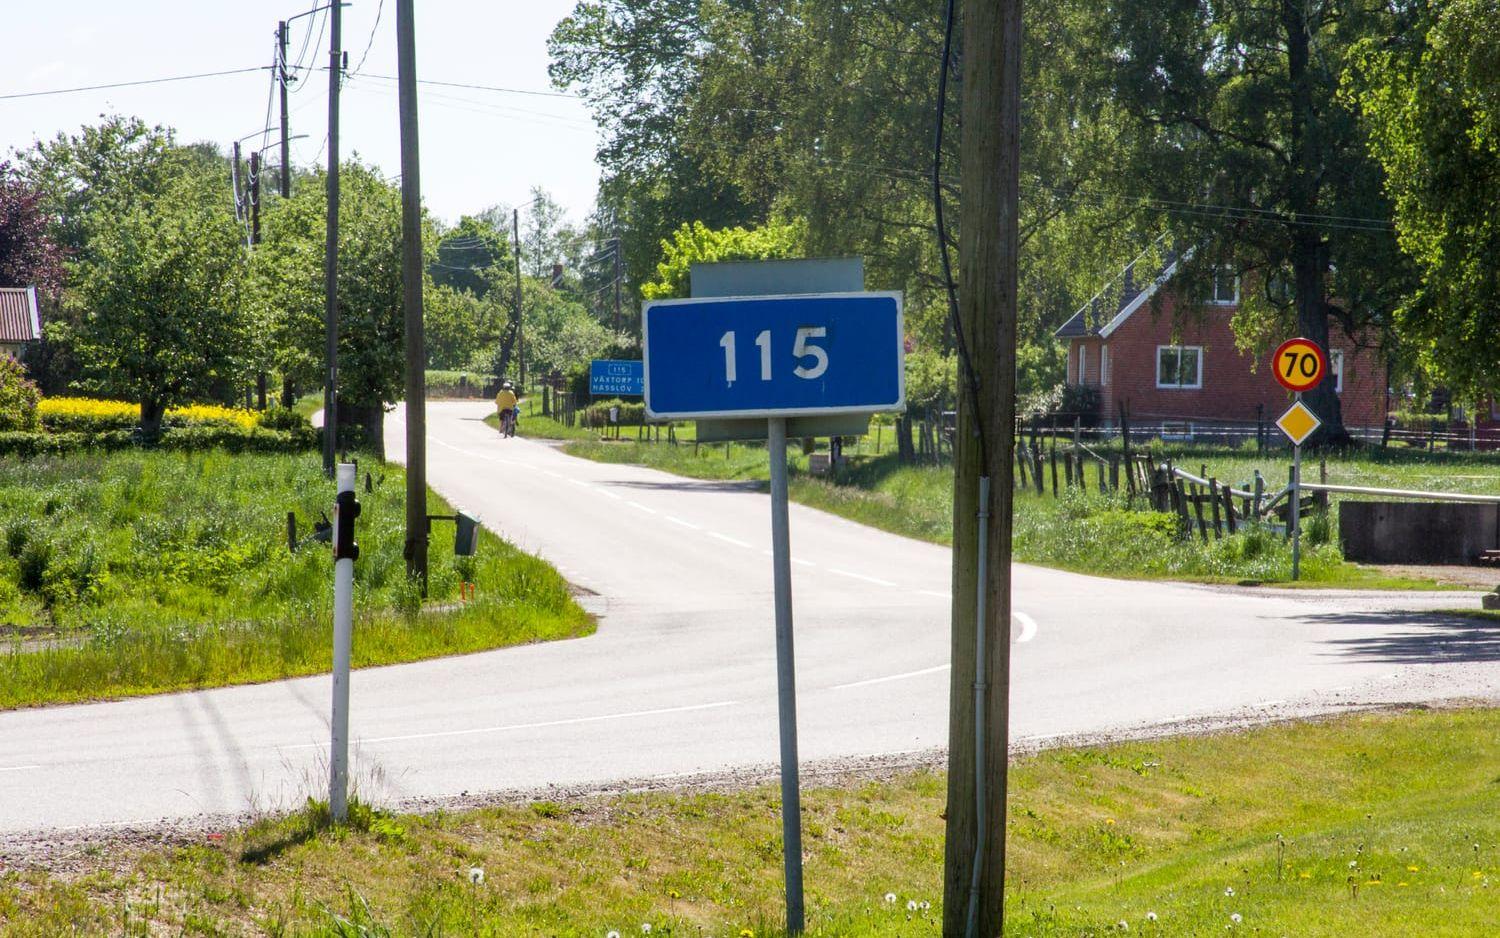 Väg 115. Sträckan där det saknas cykelväg mellan orterna är 1 750 meter lång.Bild: Jonatan Gernes